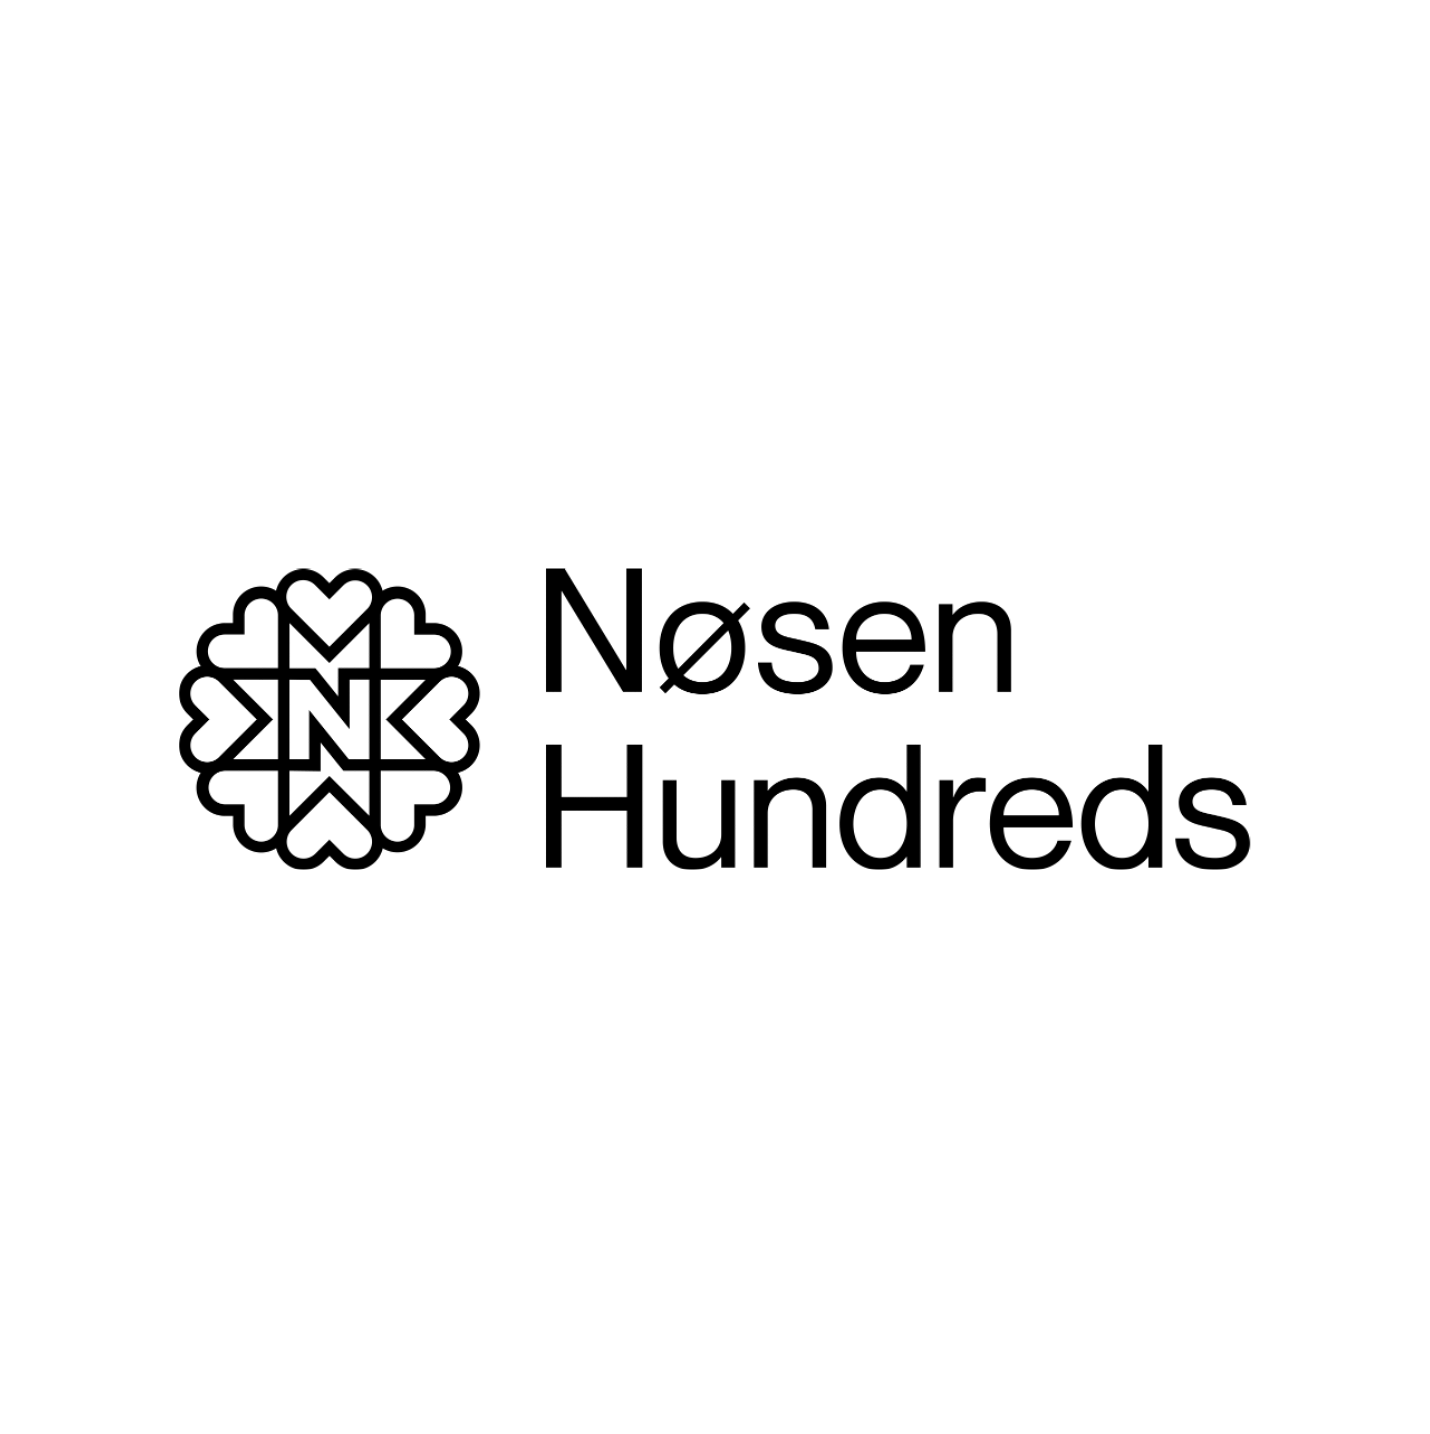 Logo-Nosen-Hundreds